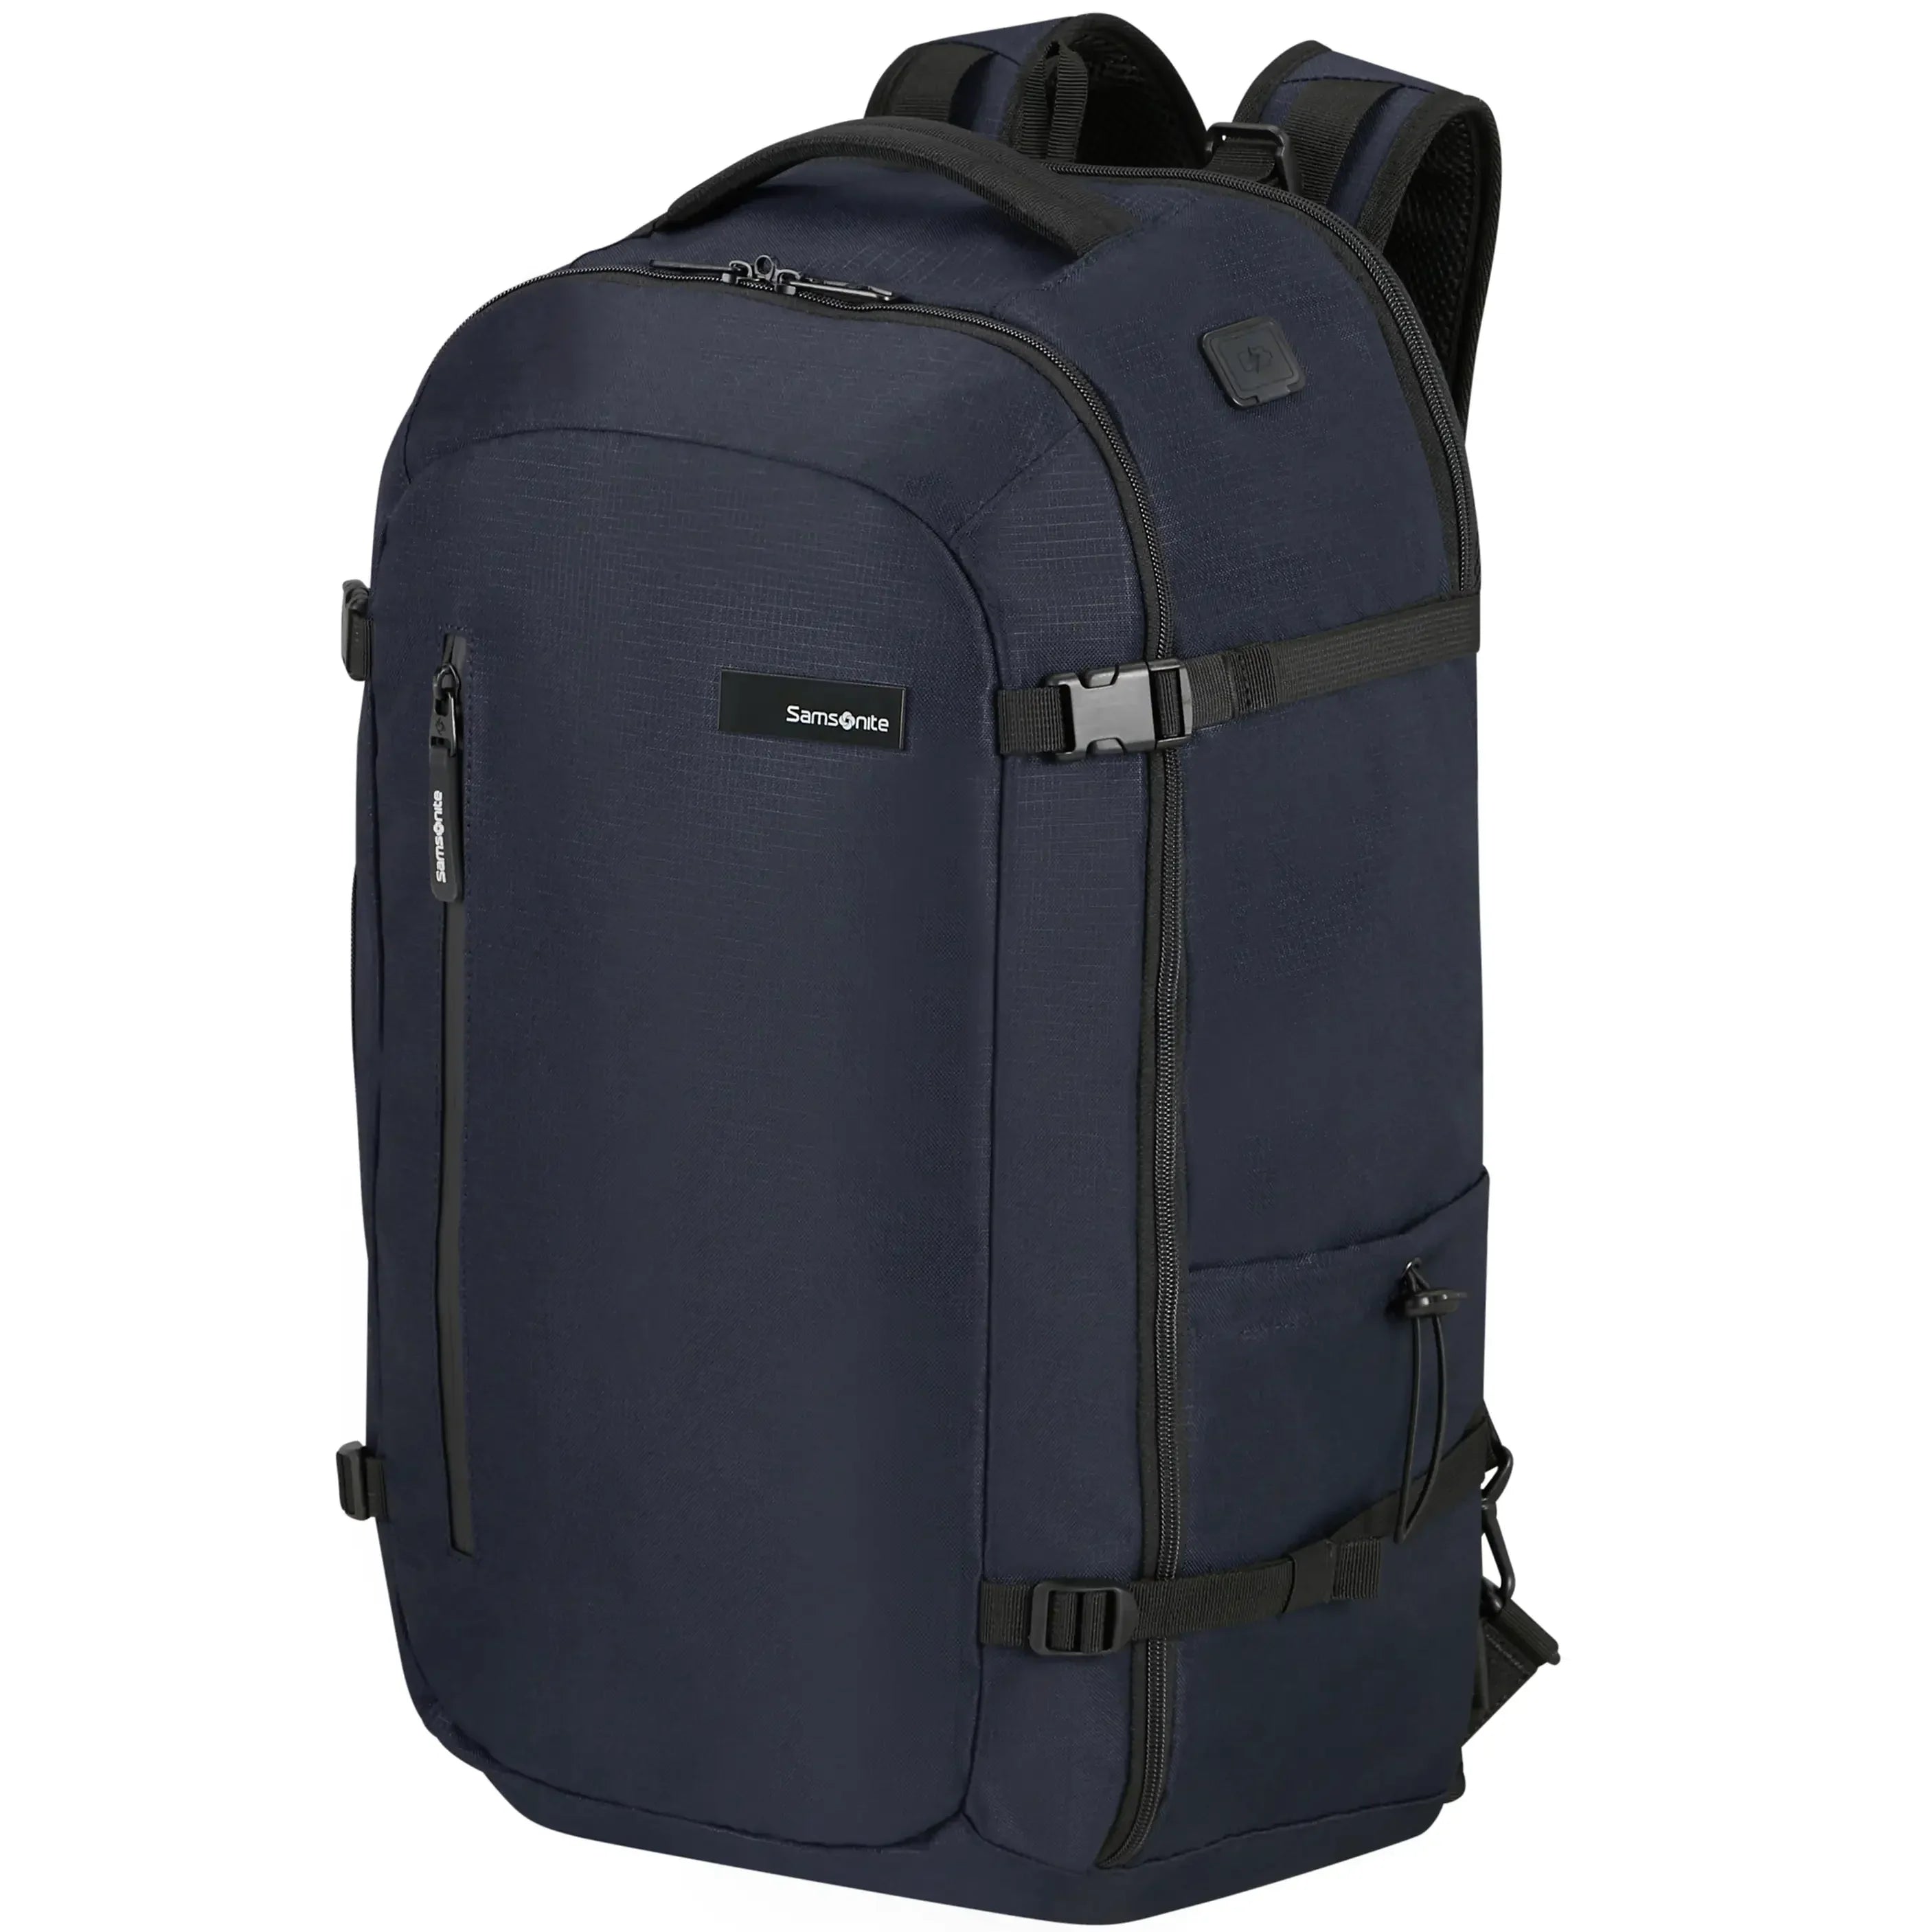 Samsonite Roader Travel Backpack S 57 cm - dark blue